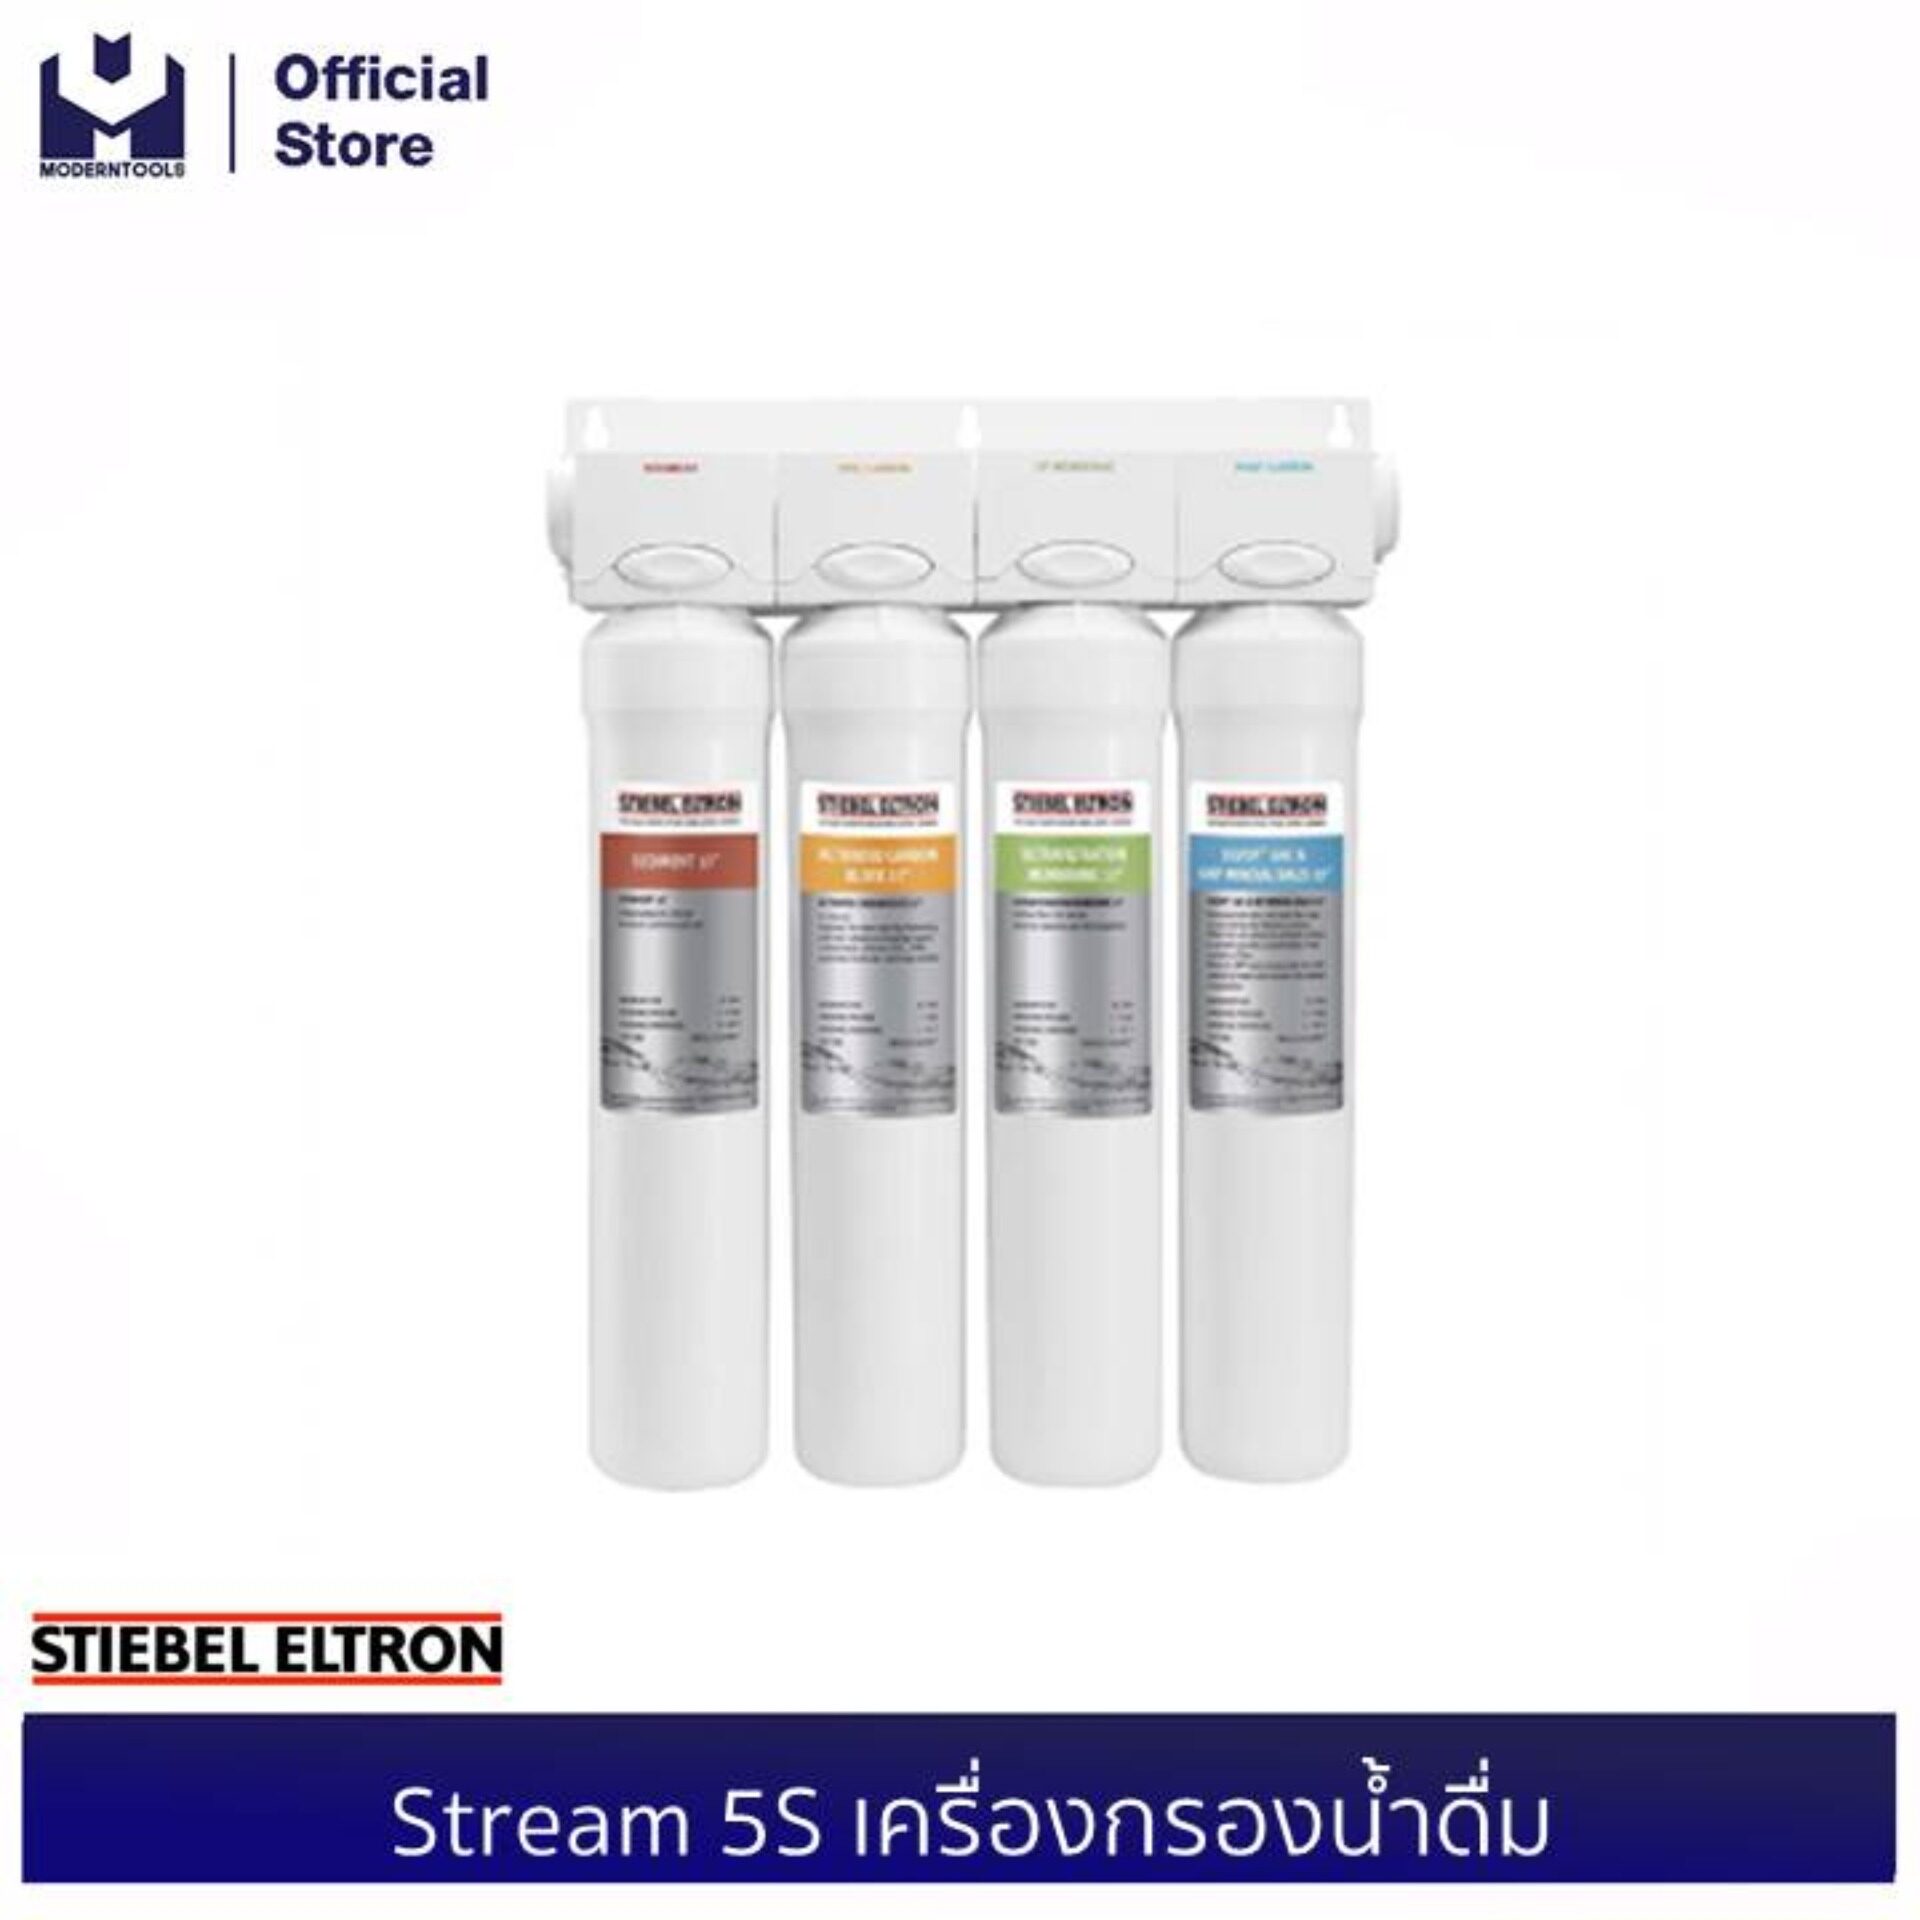 STIEBEL ELTRON Stream 5S เครื่องกรองน้ำดื่ม | modertools official